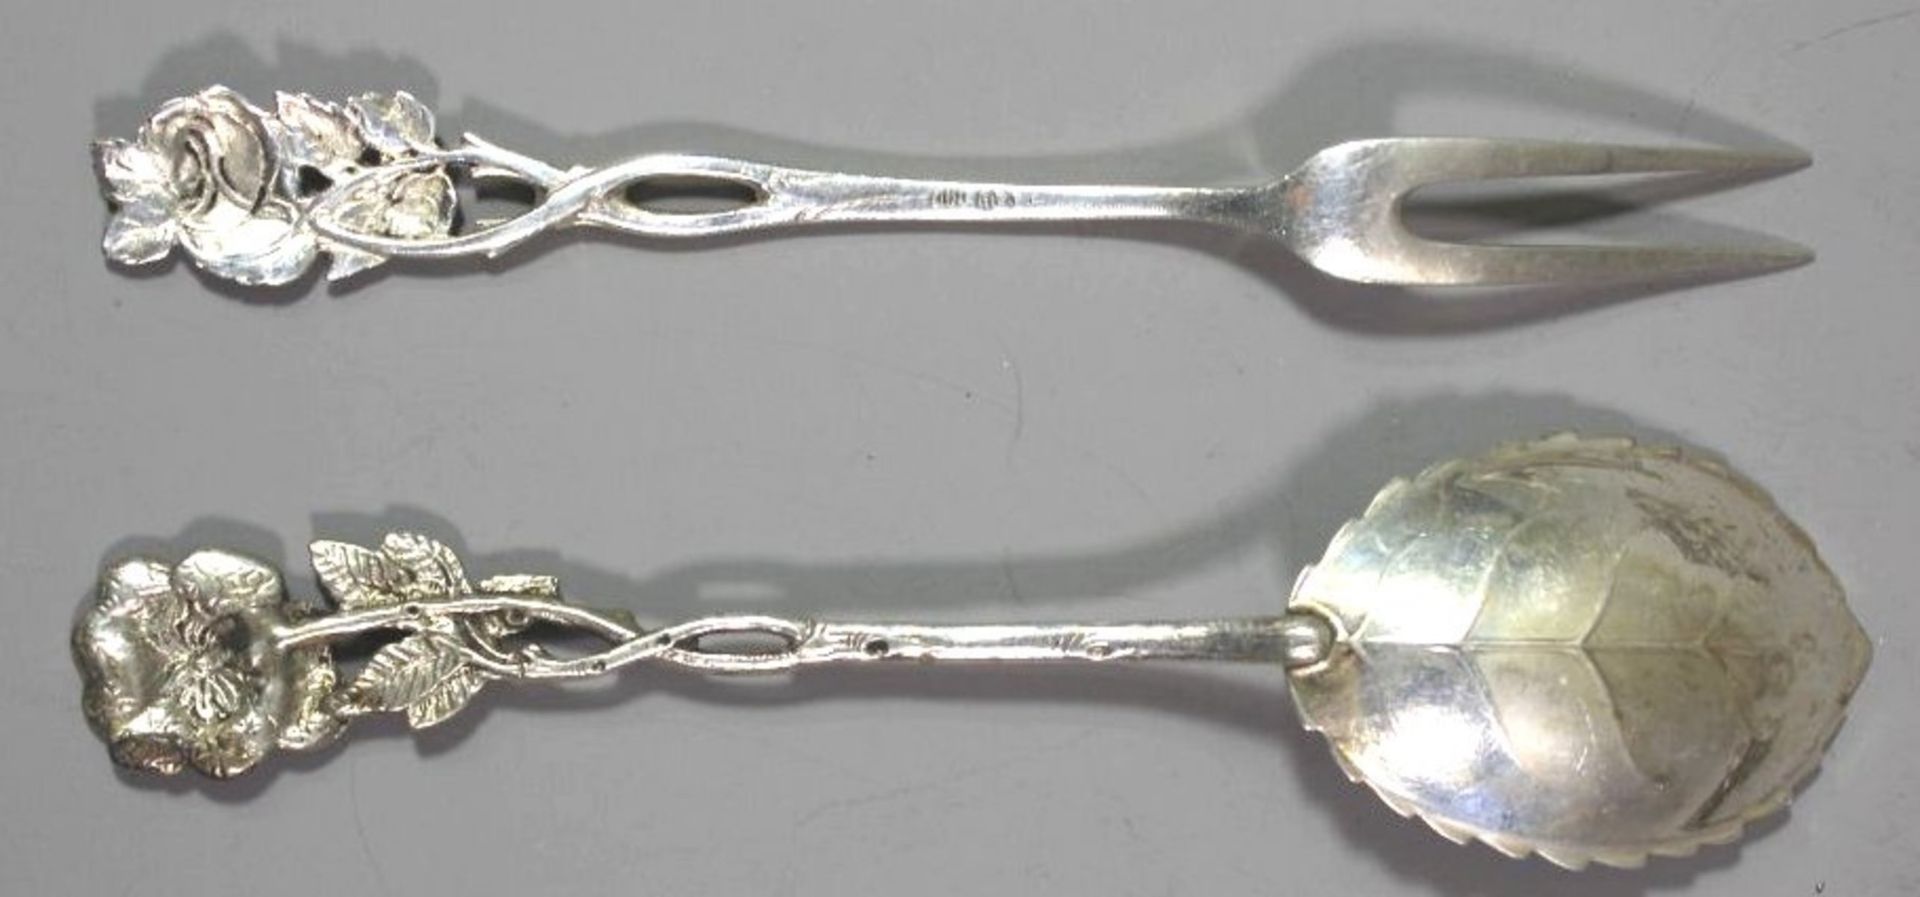 Sahnelöffel und Fleischgabel, 800er Silber, Rosenmuster, 38,5gr., ca. L-17cm. - Image 2 of 3